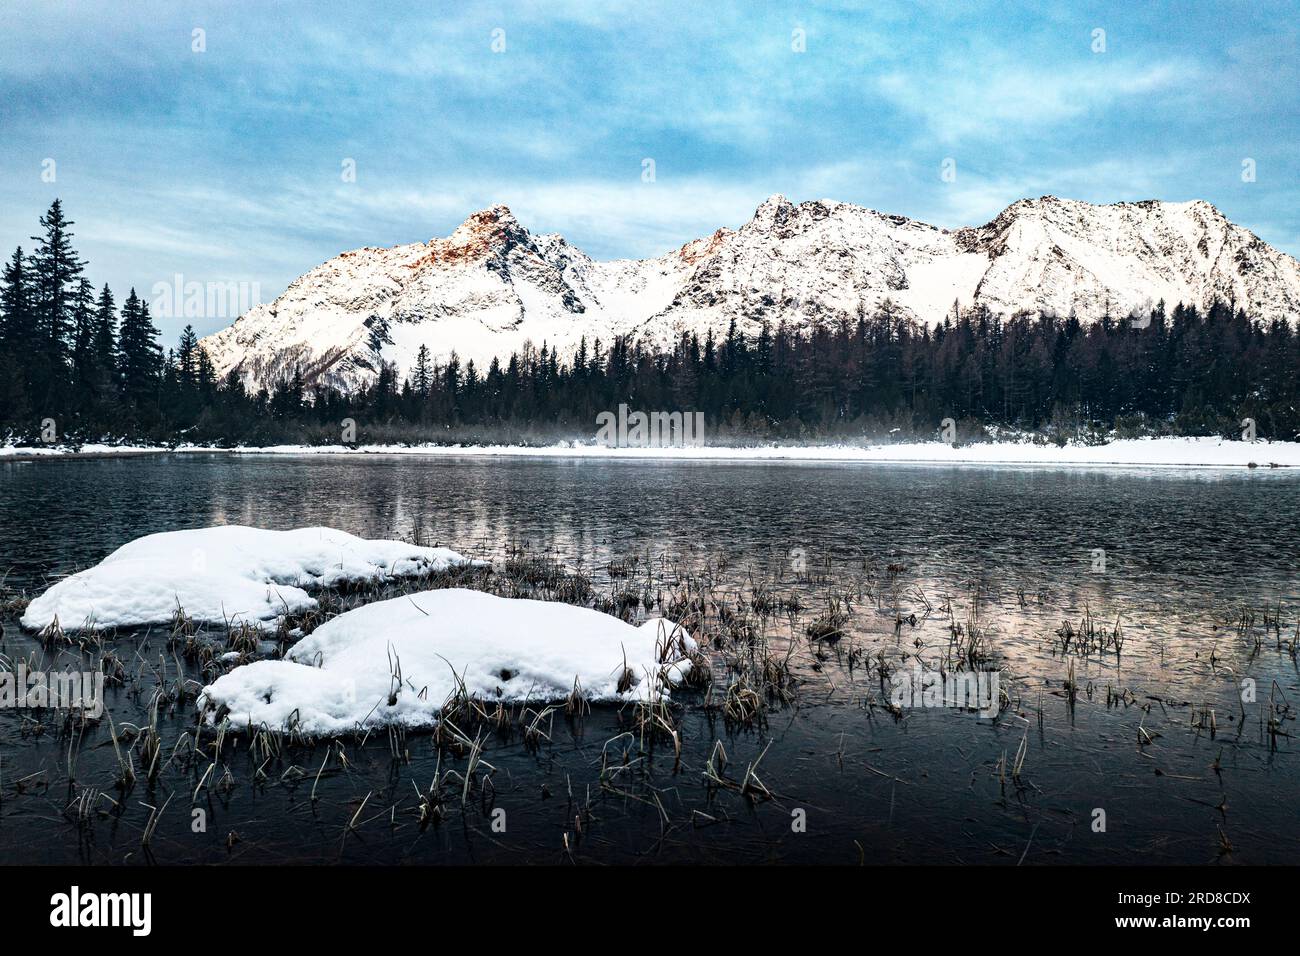 Forêt enneigée et montagnes entourant le lac gelé Entova, Valmalenco, Valtellina, Lombardie, Italie, Europe Banque D'Images